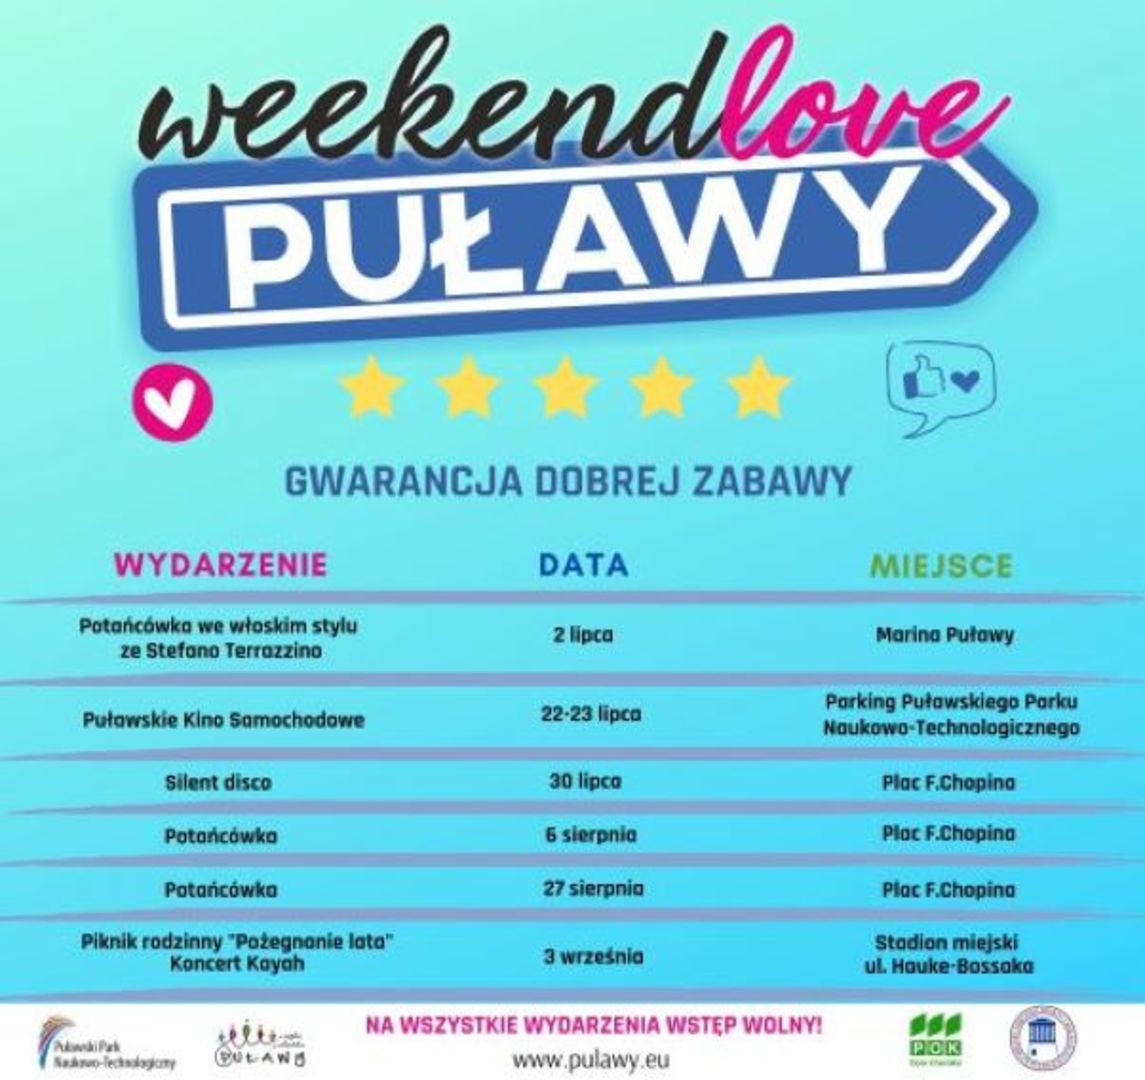 weekendlove Puławy ulotka 1.jpg